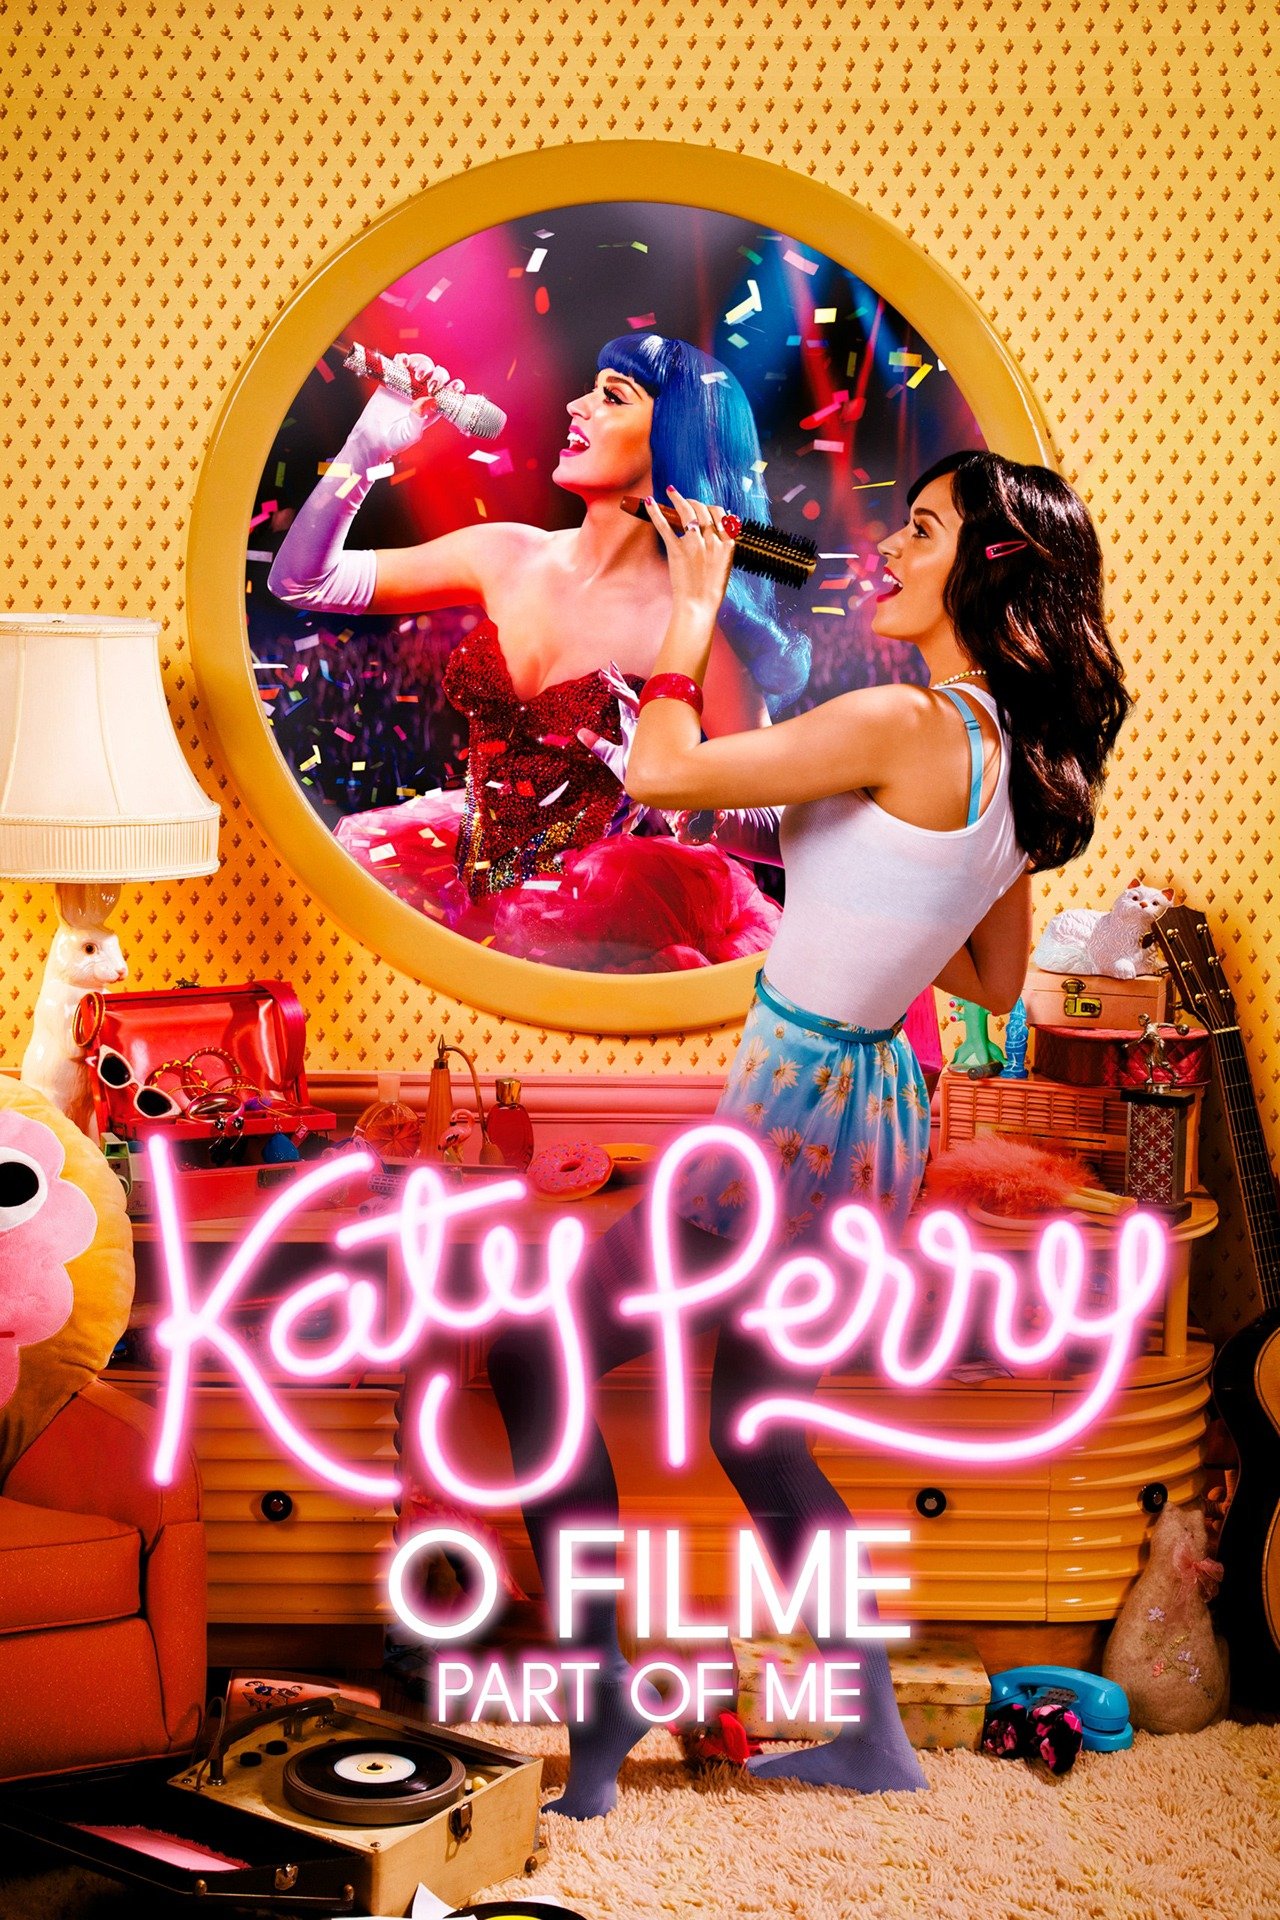 Katy Perry - Part of Me (Clipe Oficial) (Legendado/Tradução) (PT-BR) 